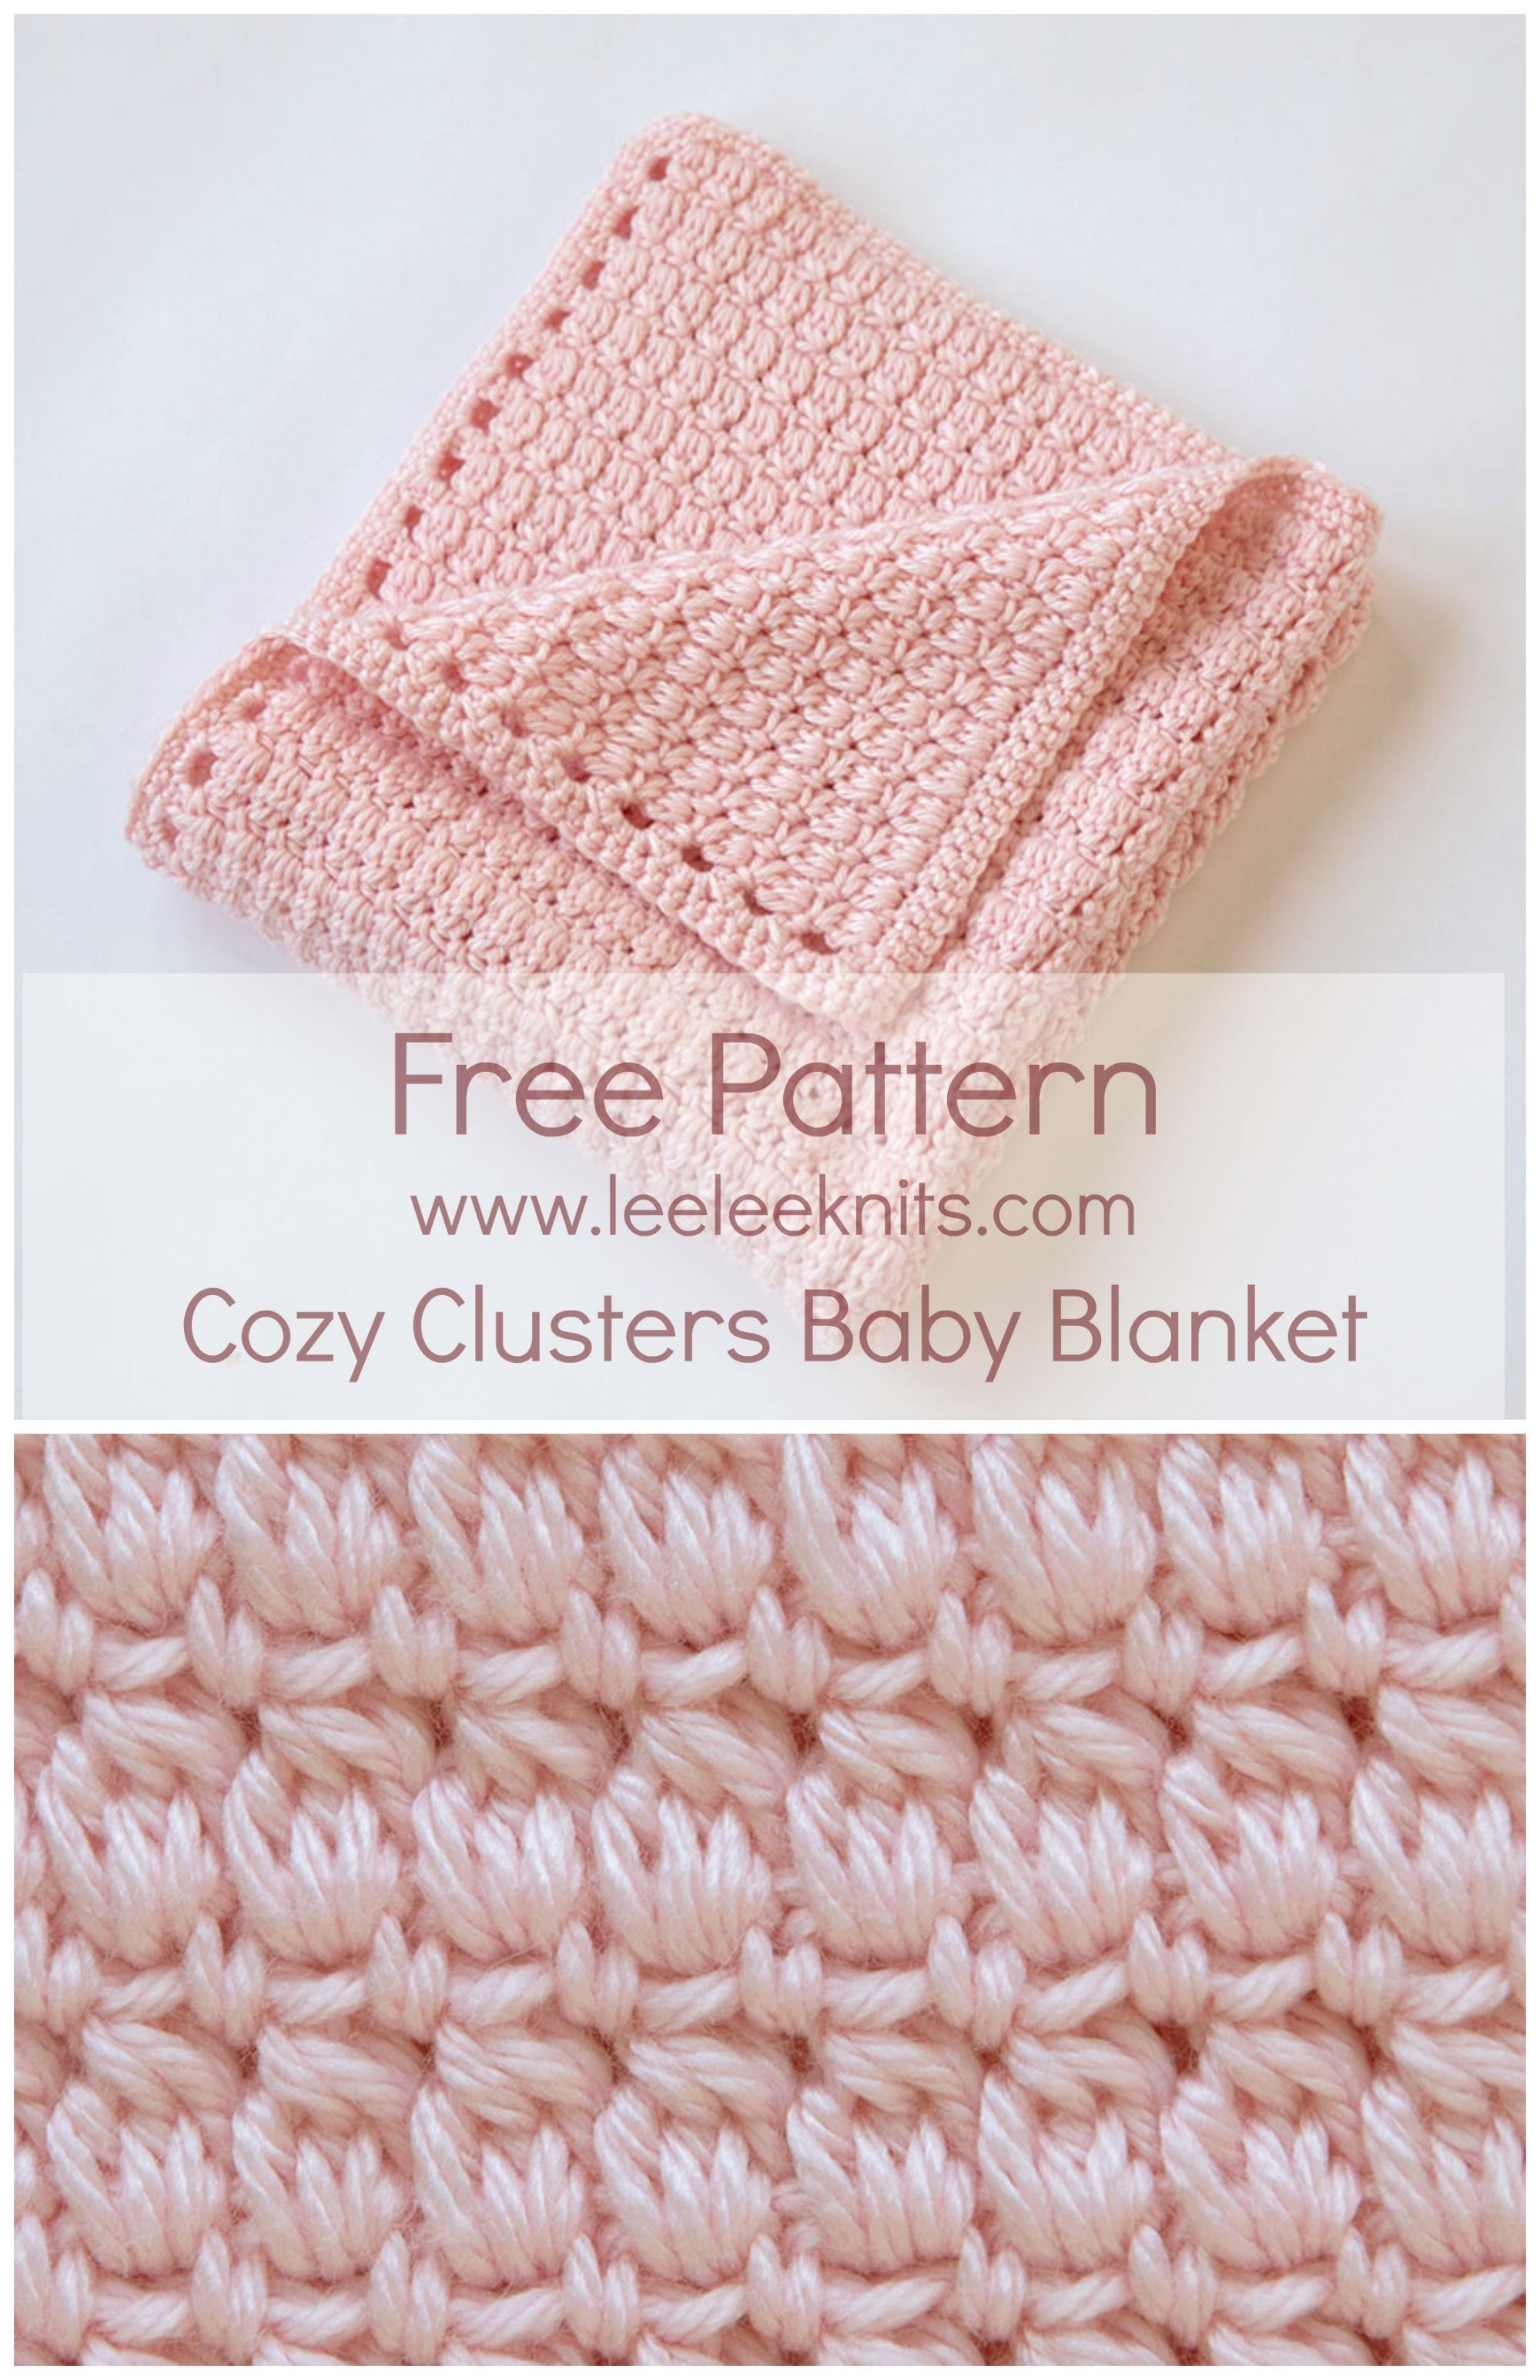 Crochet Baby Blanket Free Pattern Cozy Clusters Free Crochet Ba Blanket Pattern Sewing Crocheting